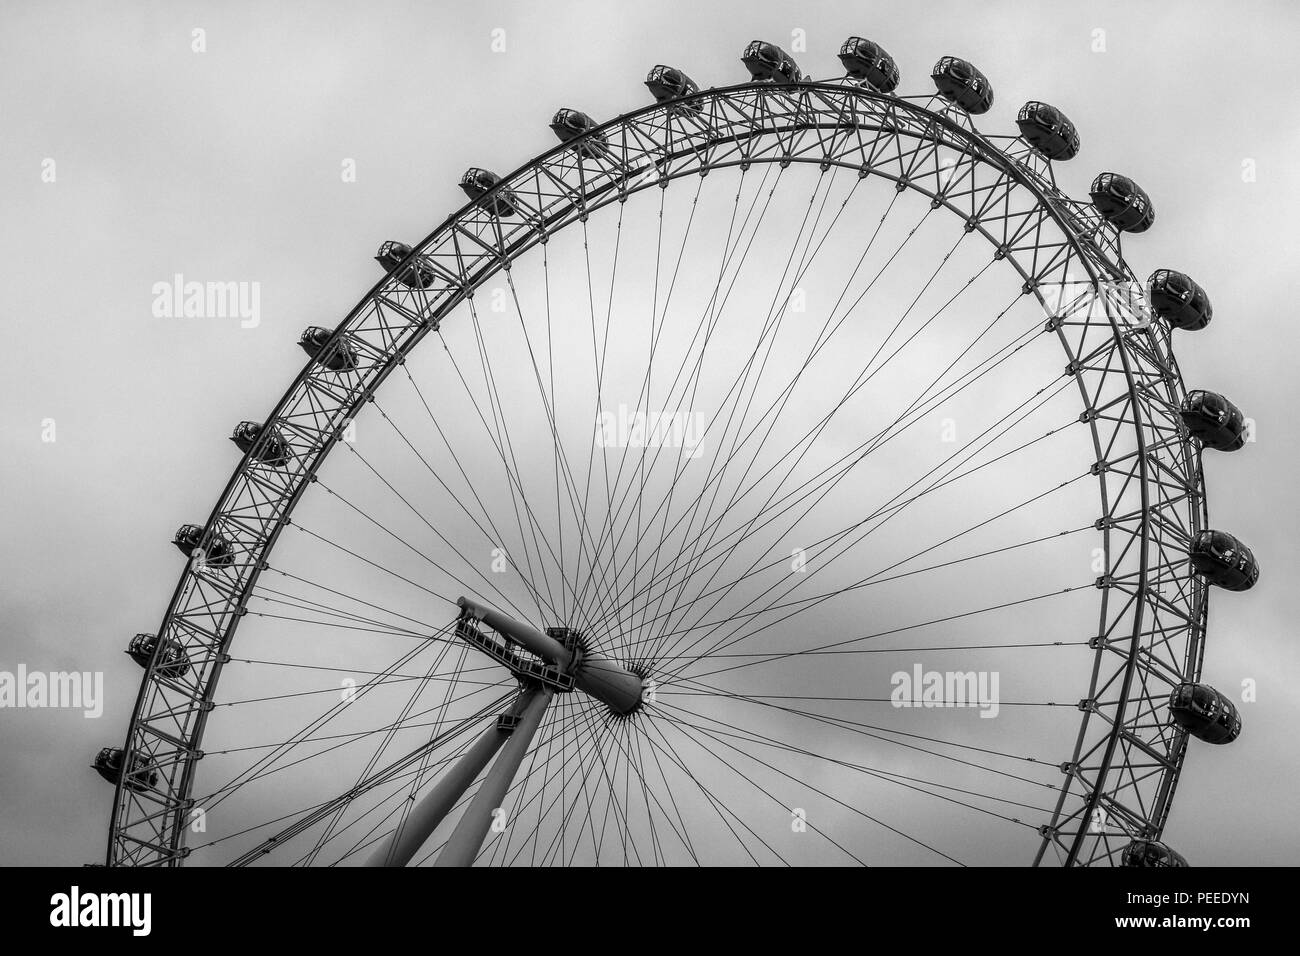 un d u00e9tail de la london eye  la grande roue  u00e0 londres en angleterre  photo noir et blanc d u0026 39 un